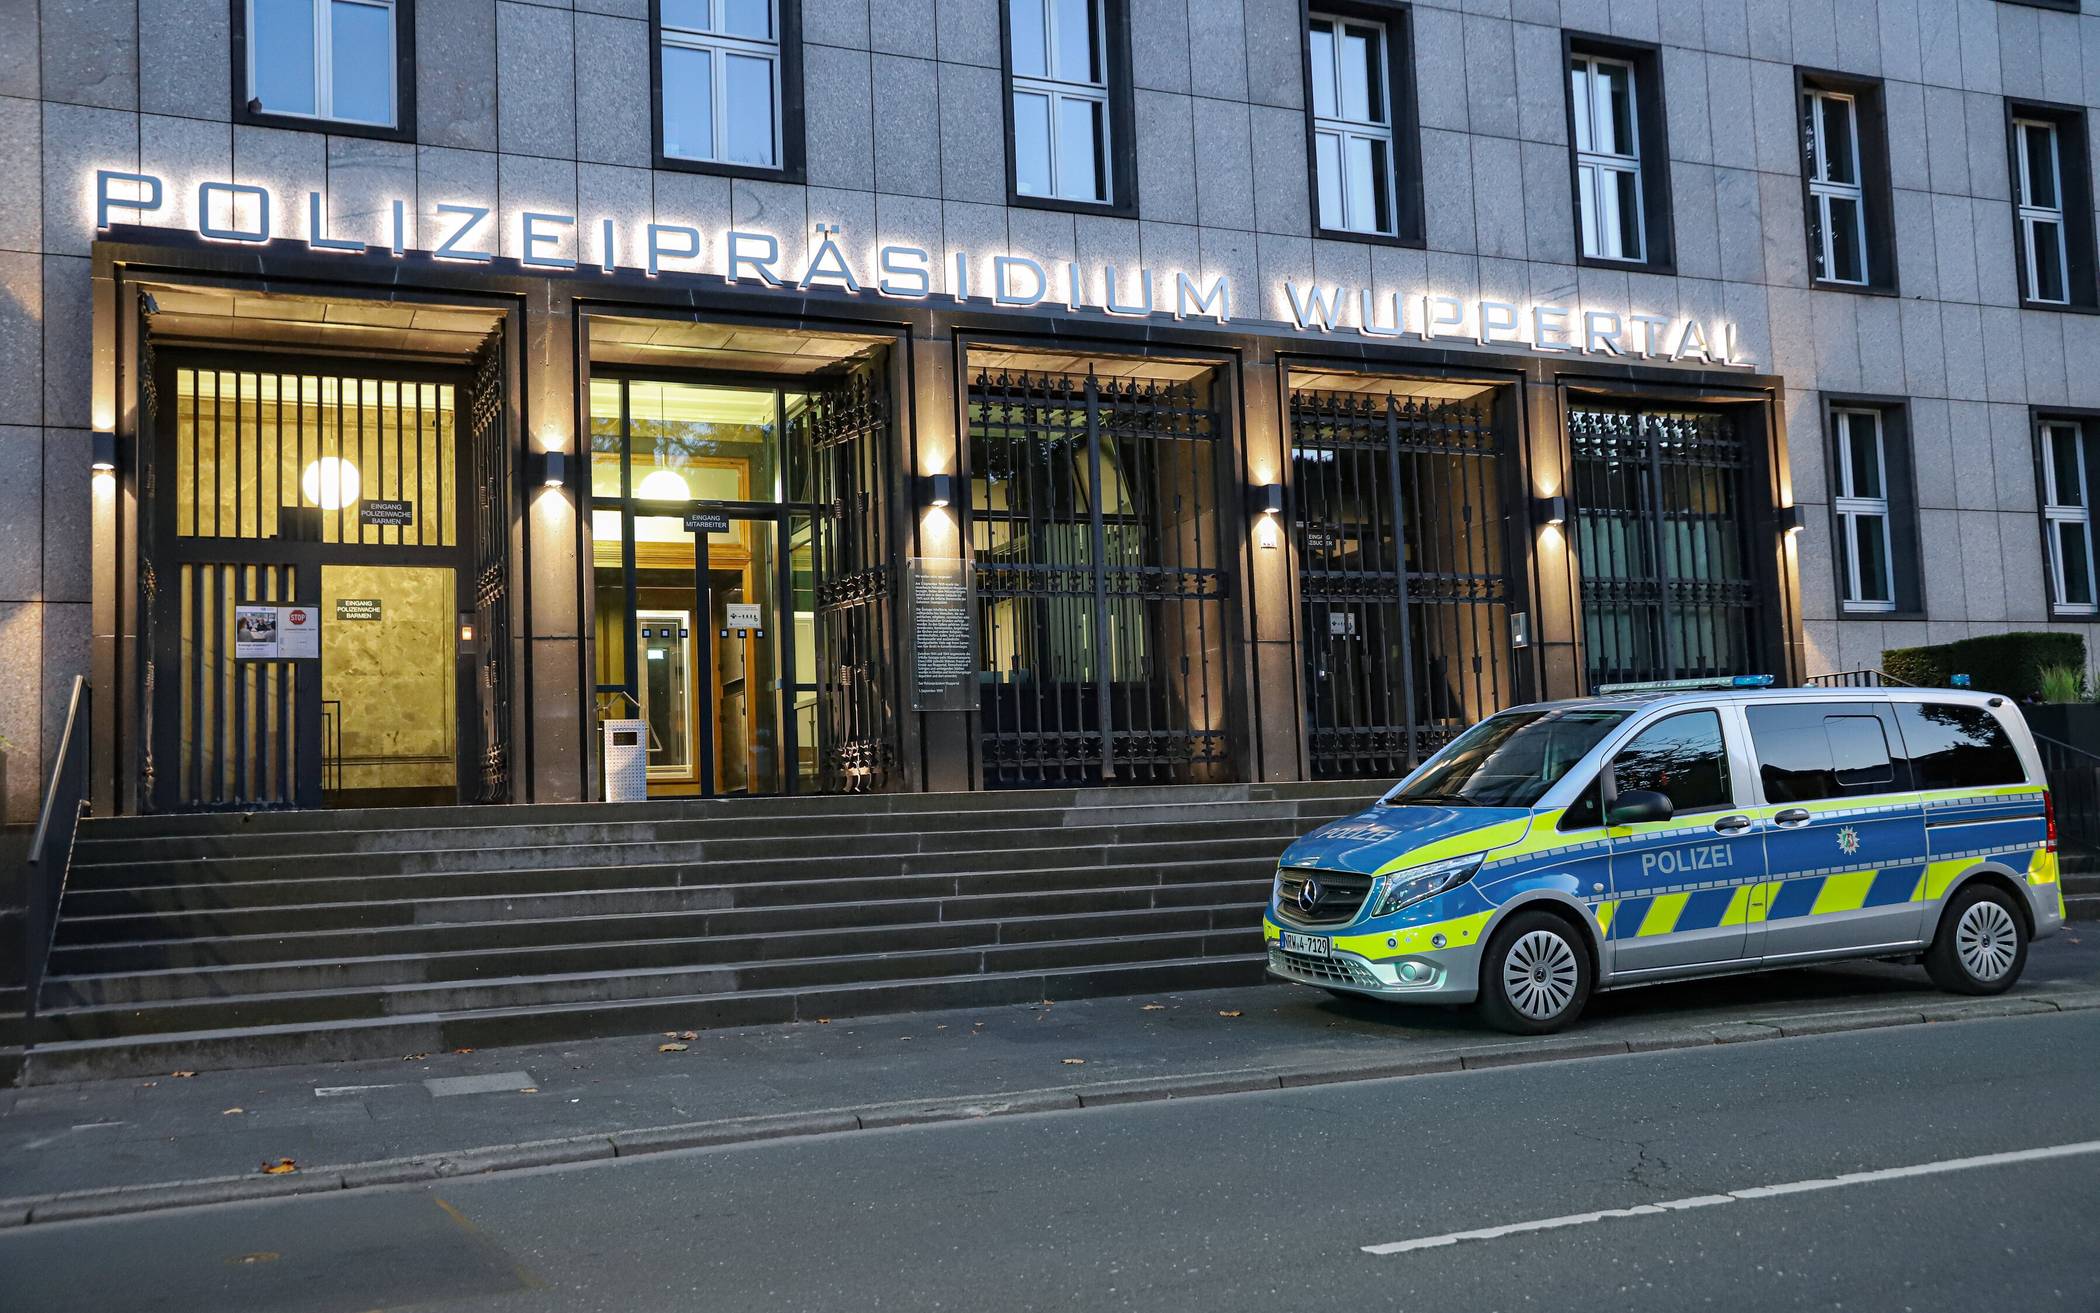 25-Jähriger in Wuppertaler Polizeigewahrsam gestorben